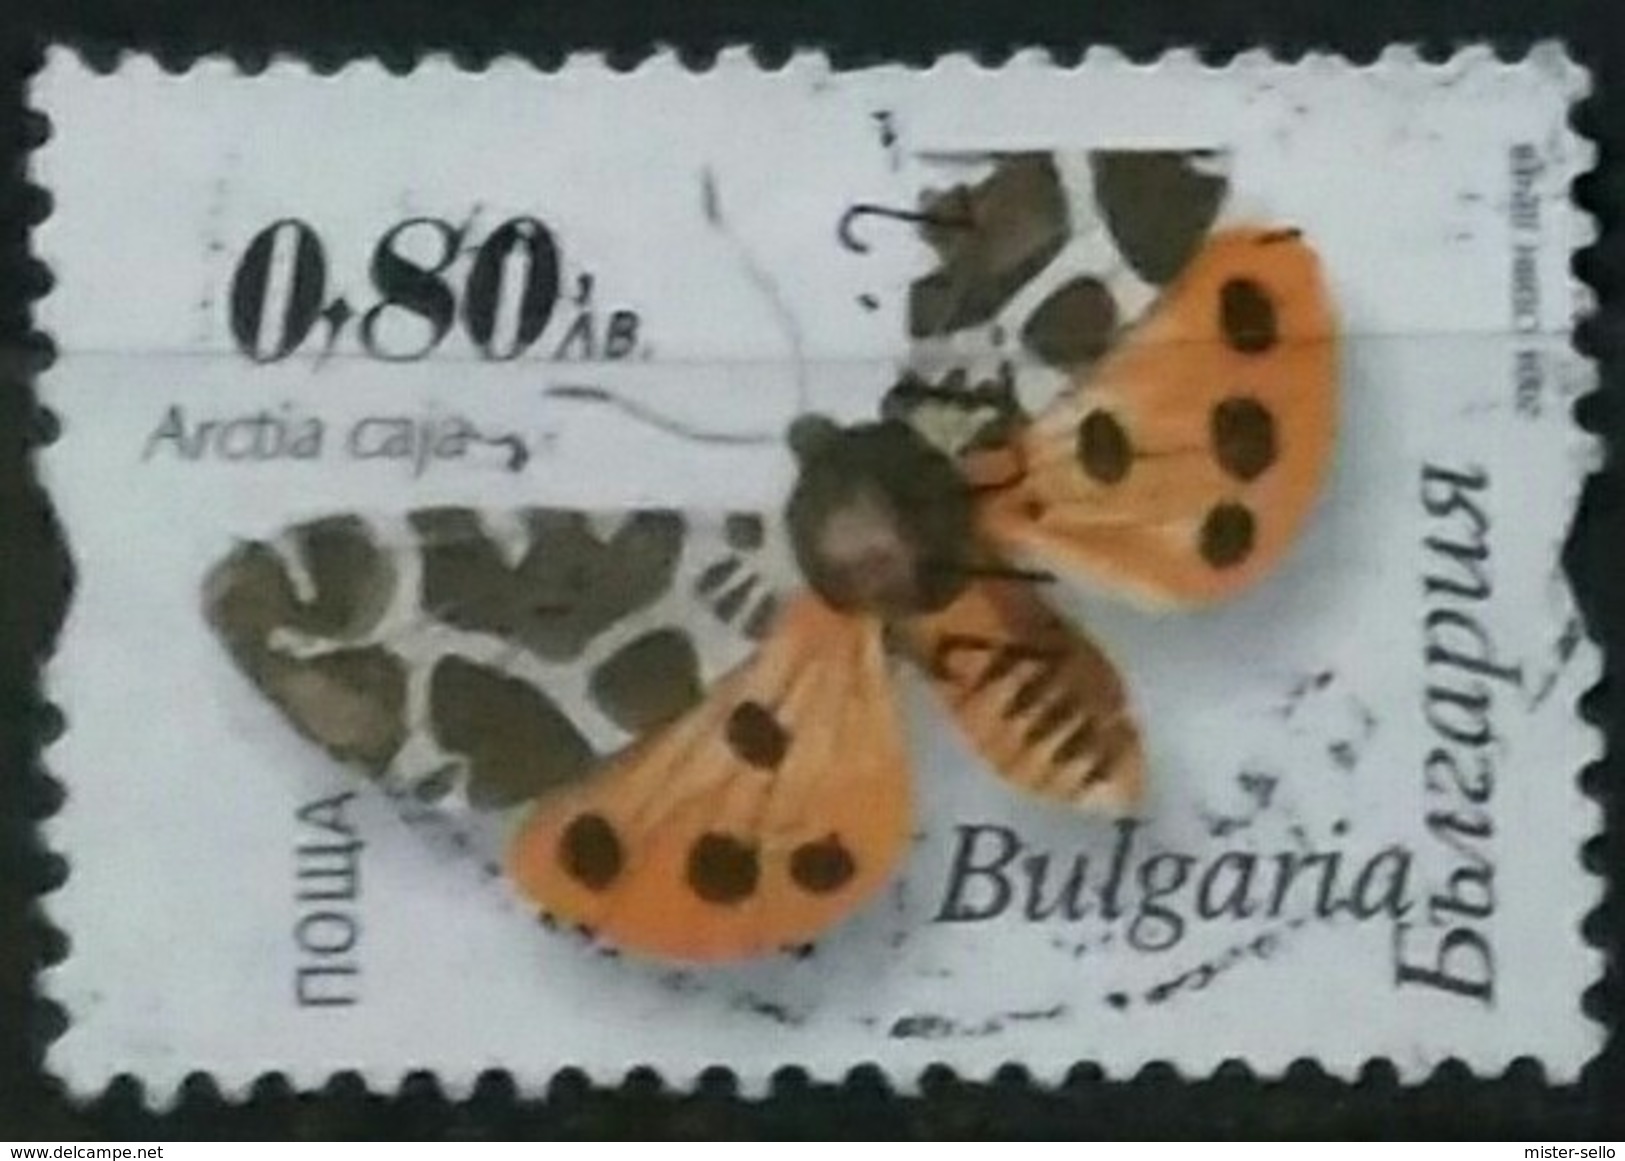 BULGARIA 2004 Moths. USADO - USED. - Used Stamps